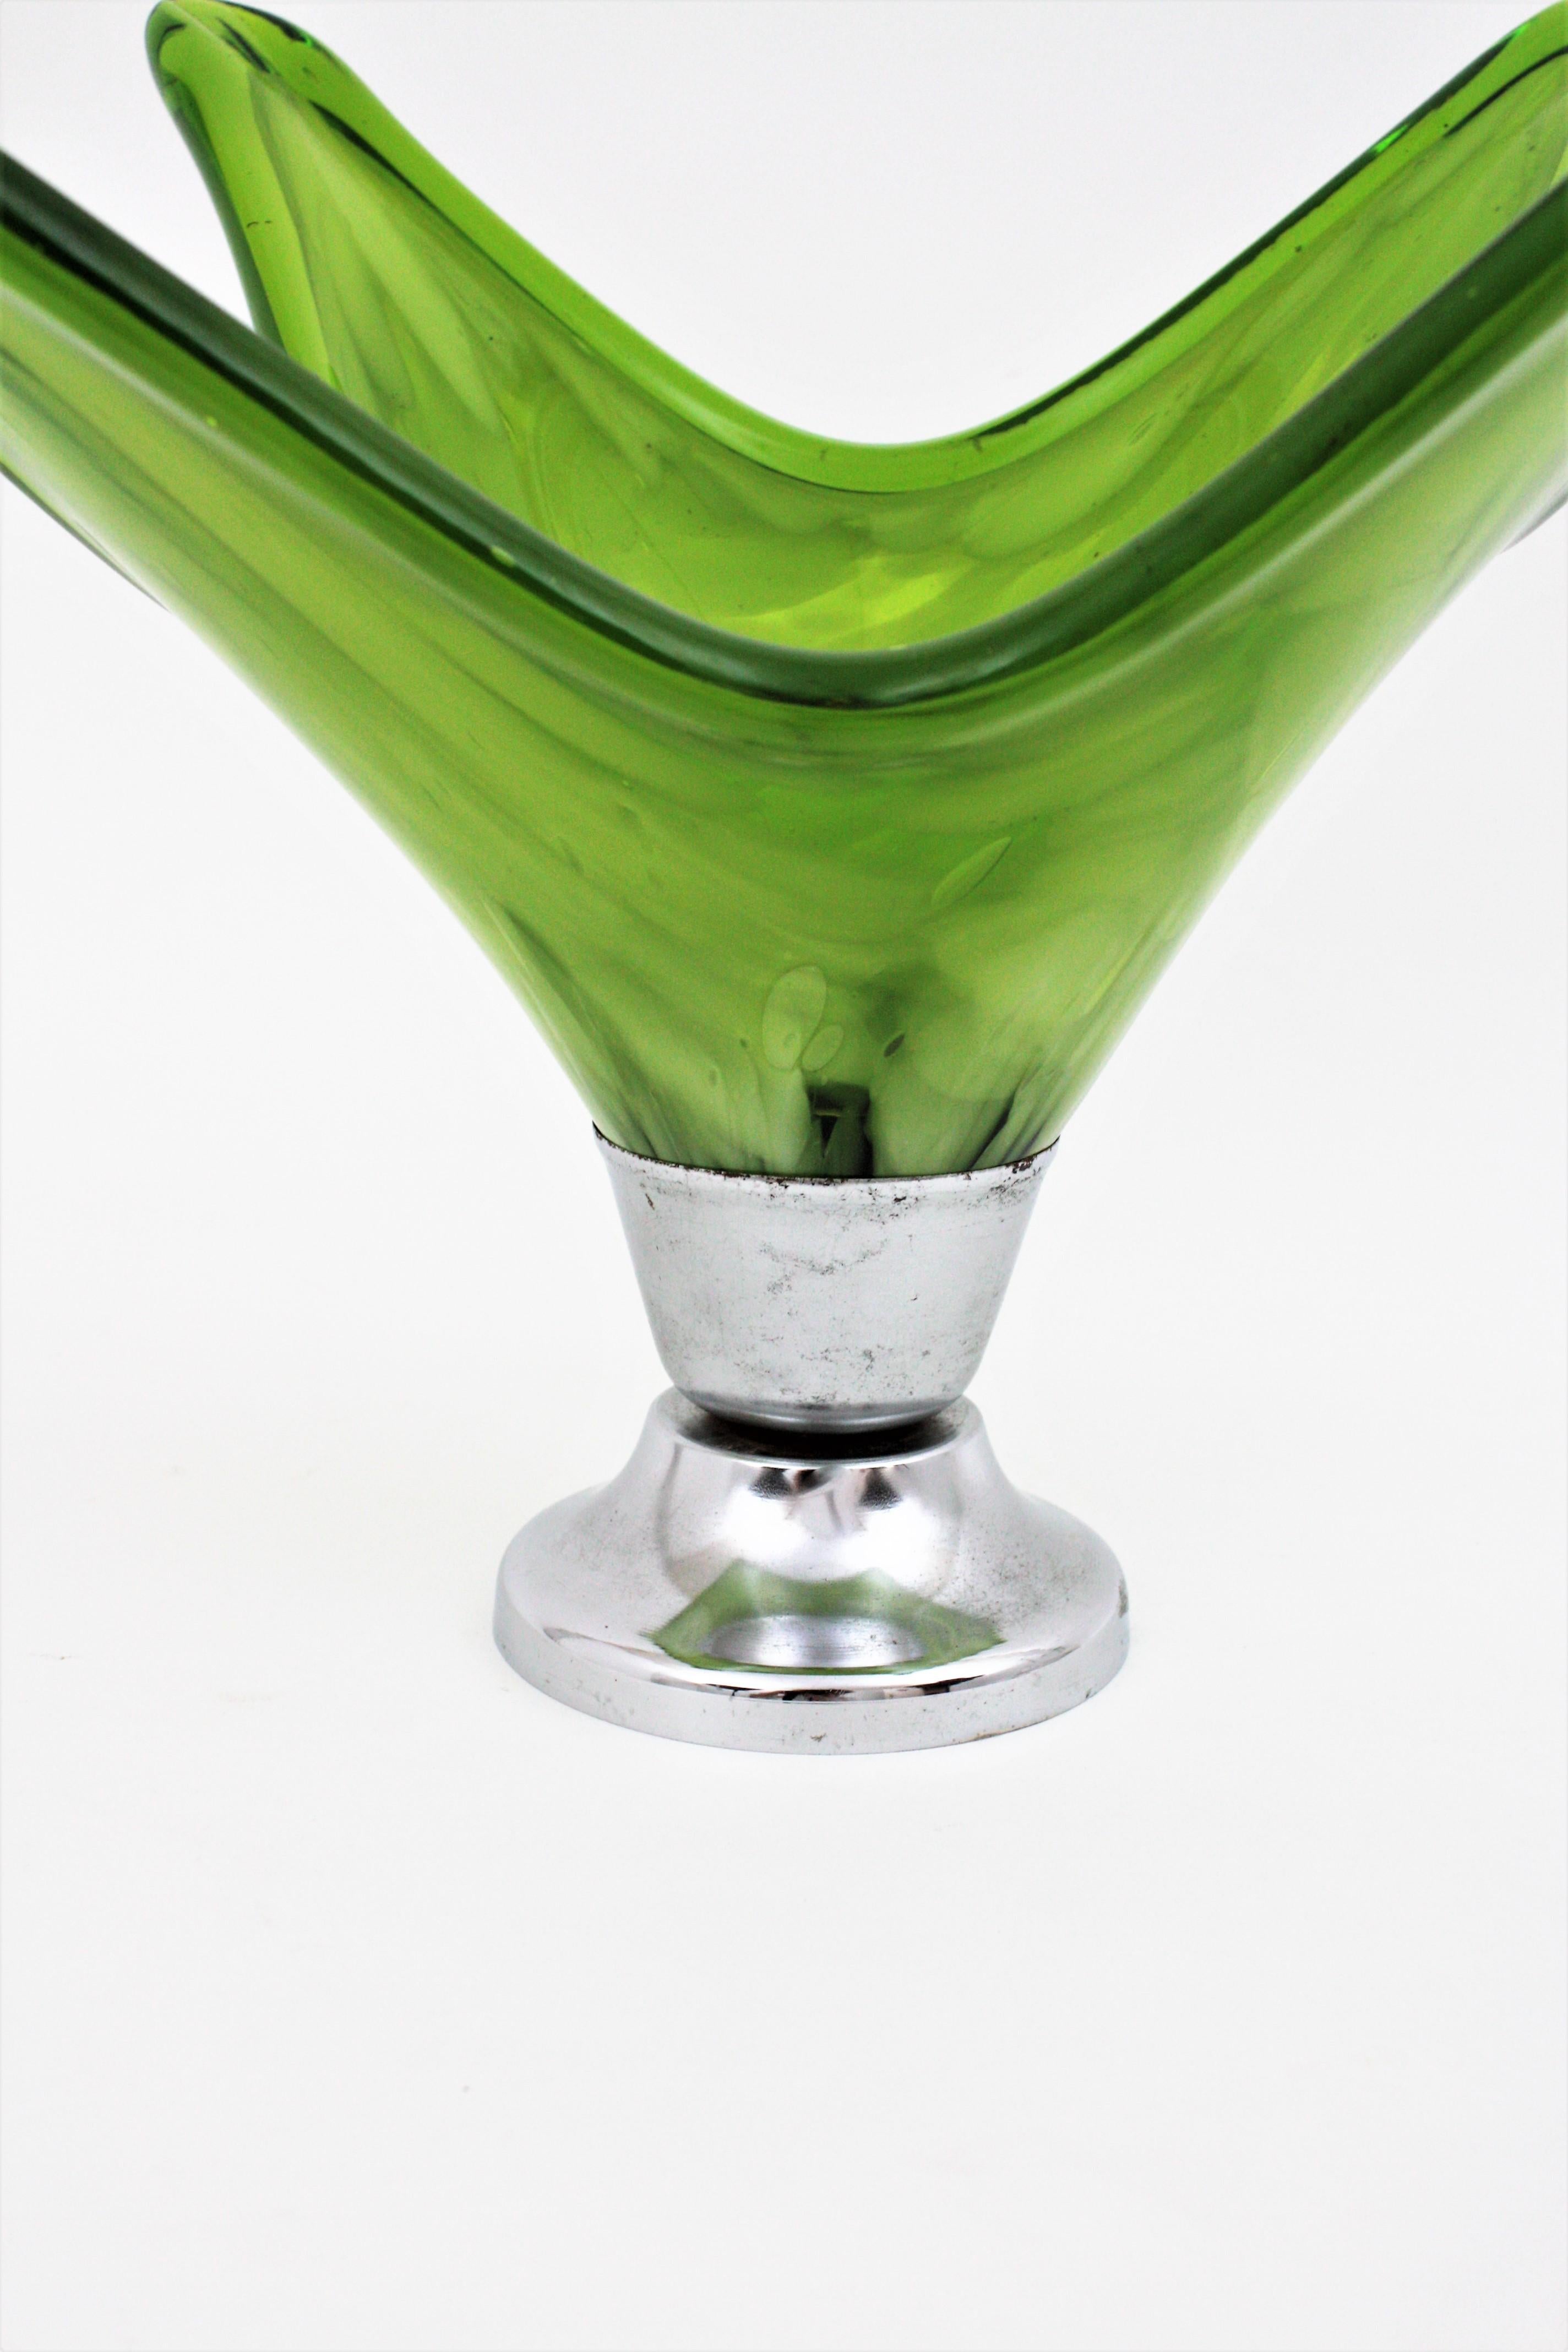 Italian Modernist Murano Green & White Glass Centerpiece Vase with Chromed Base For Sale 2